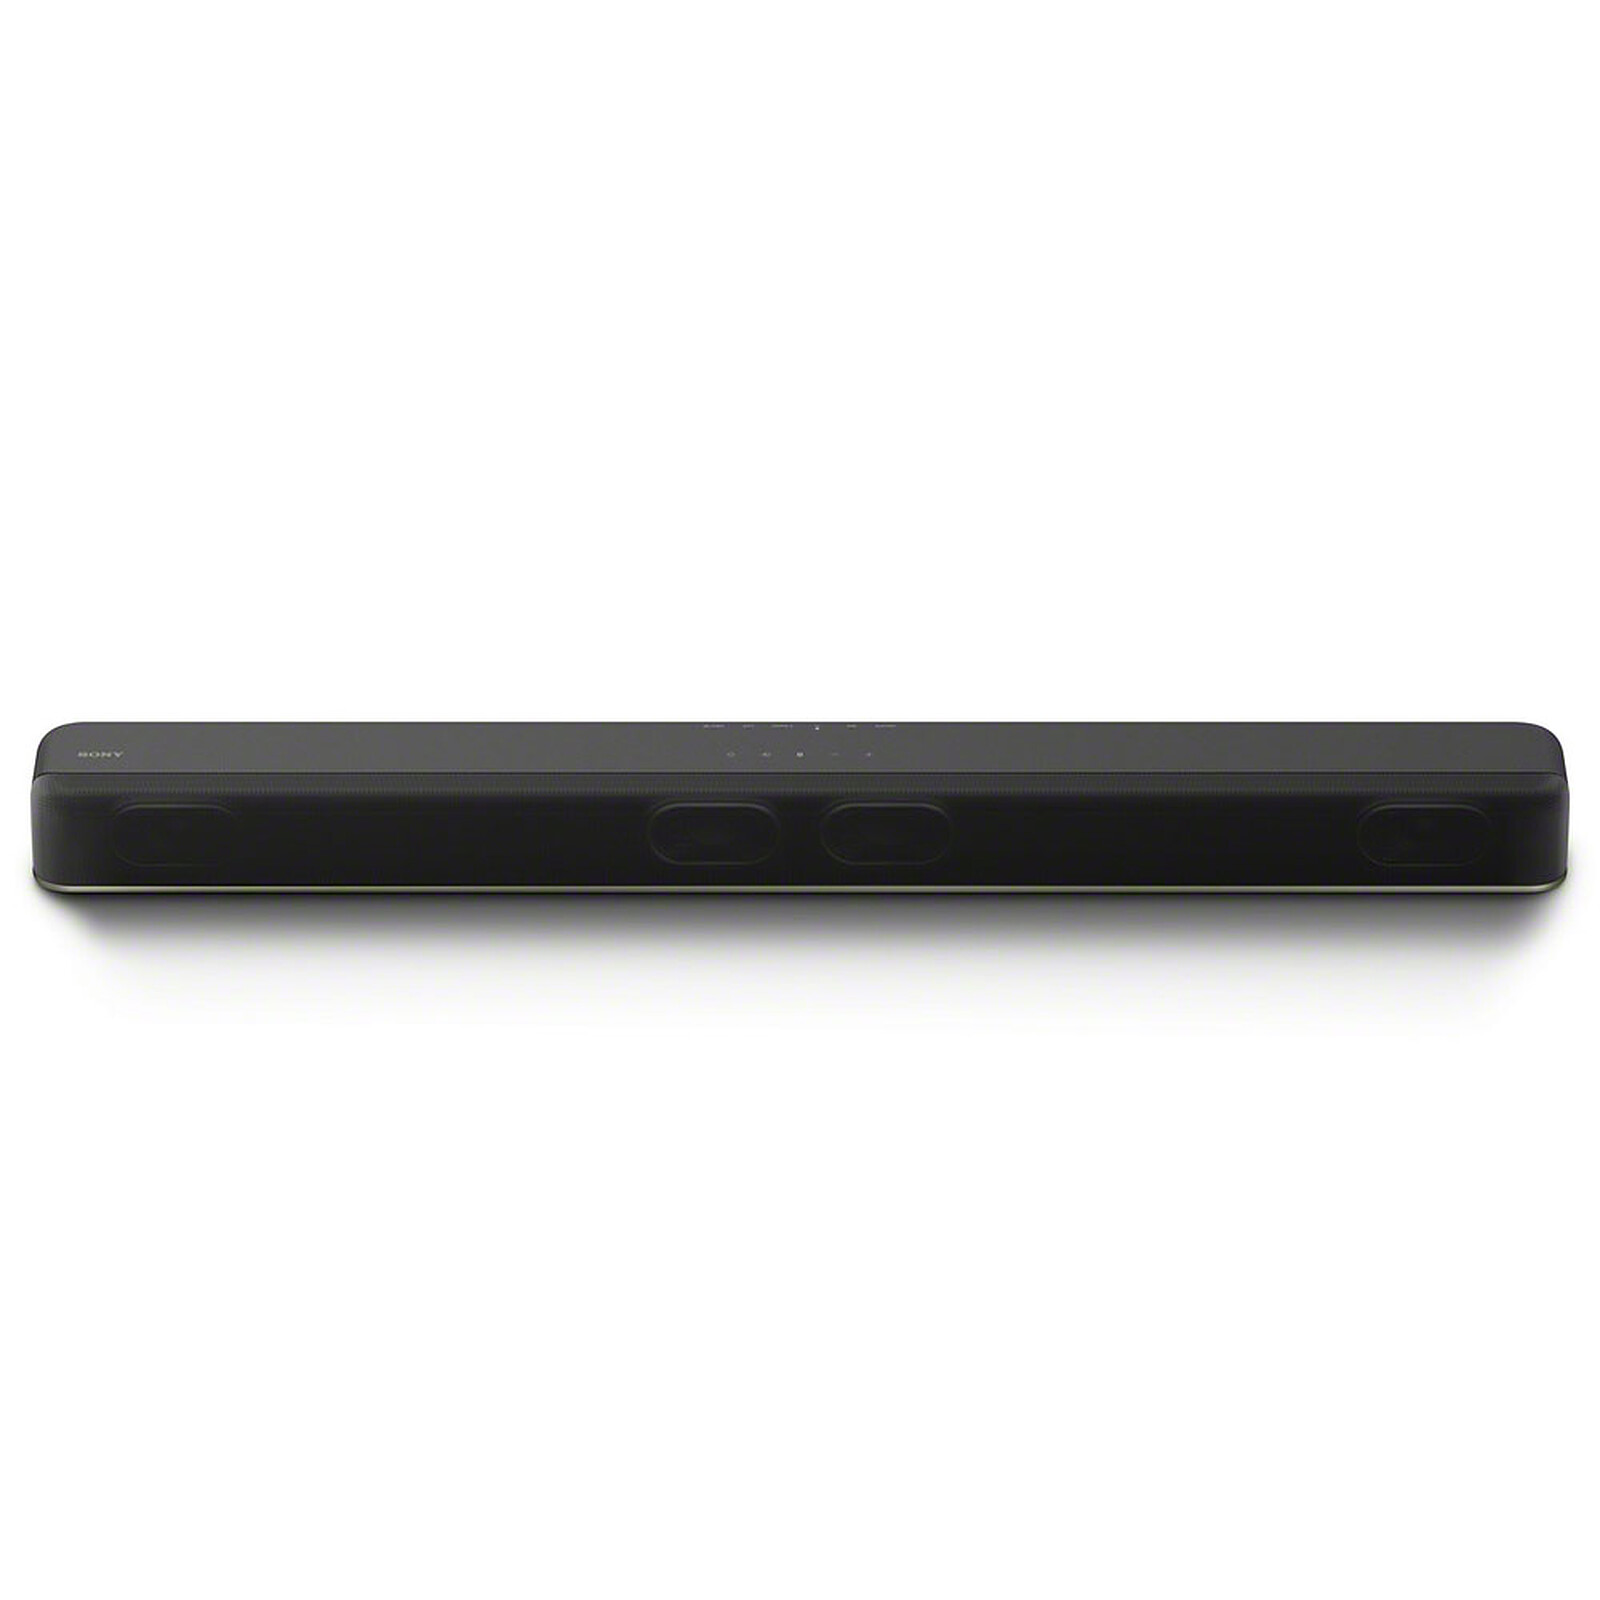 Sony HT-X8500 Sound bar Sony on